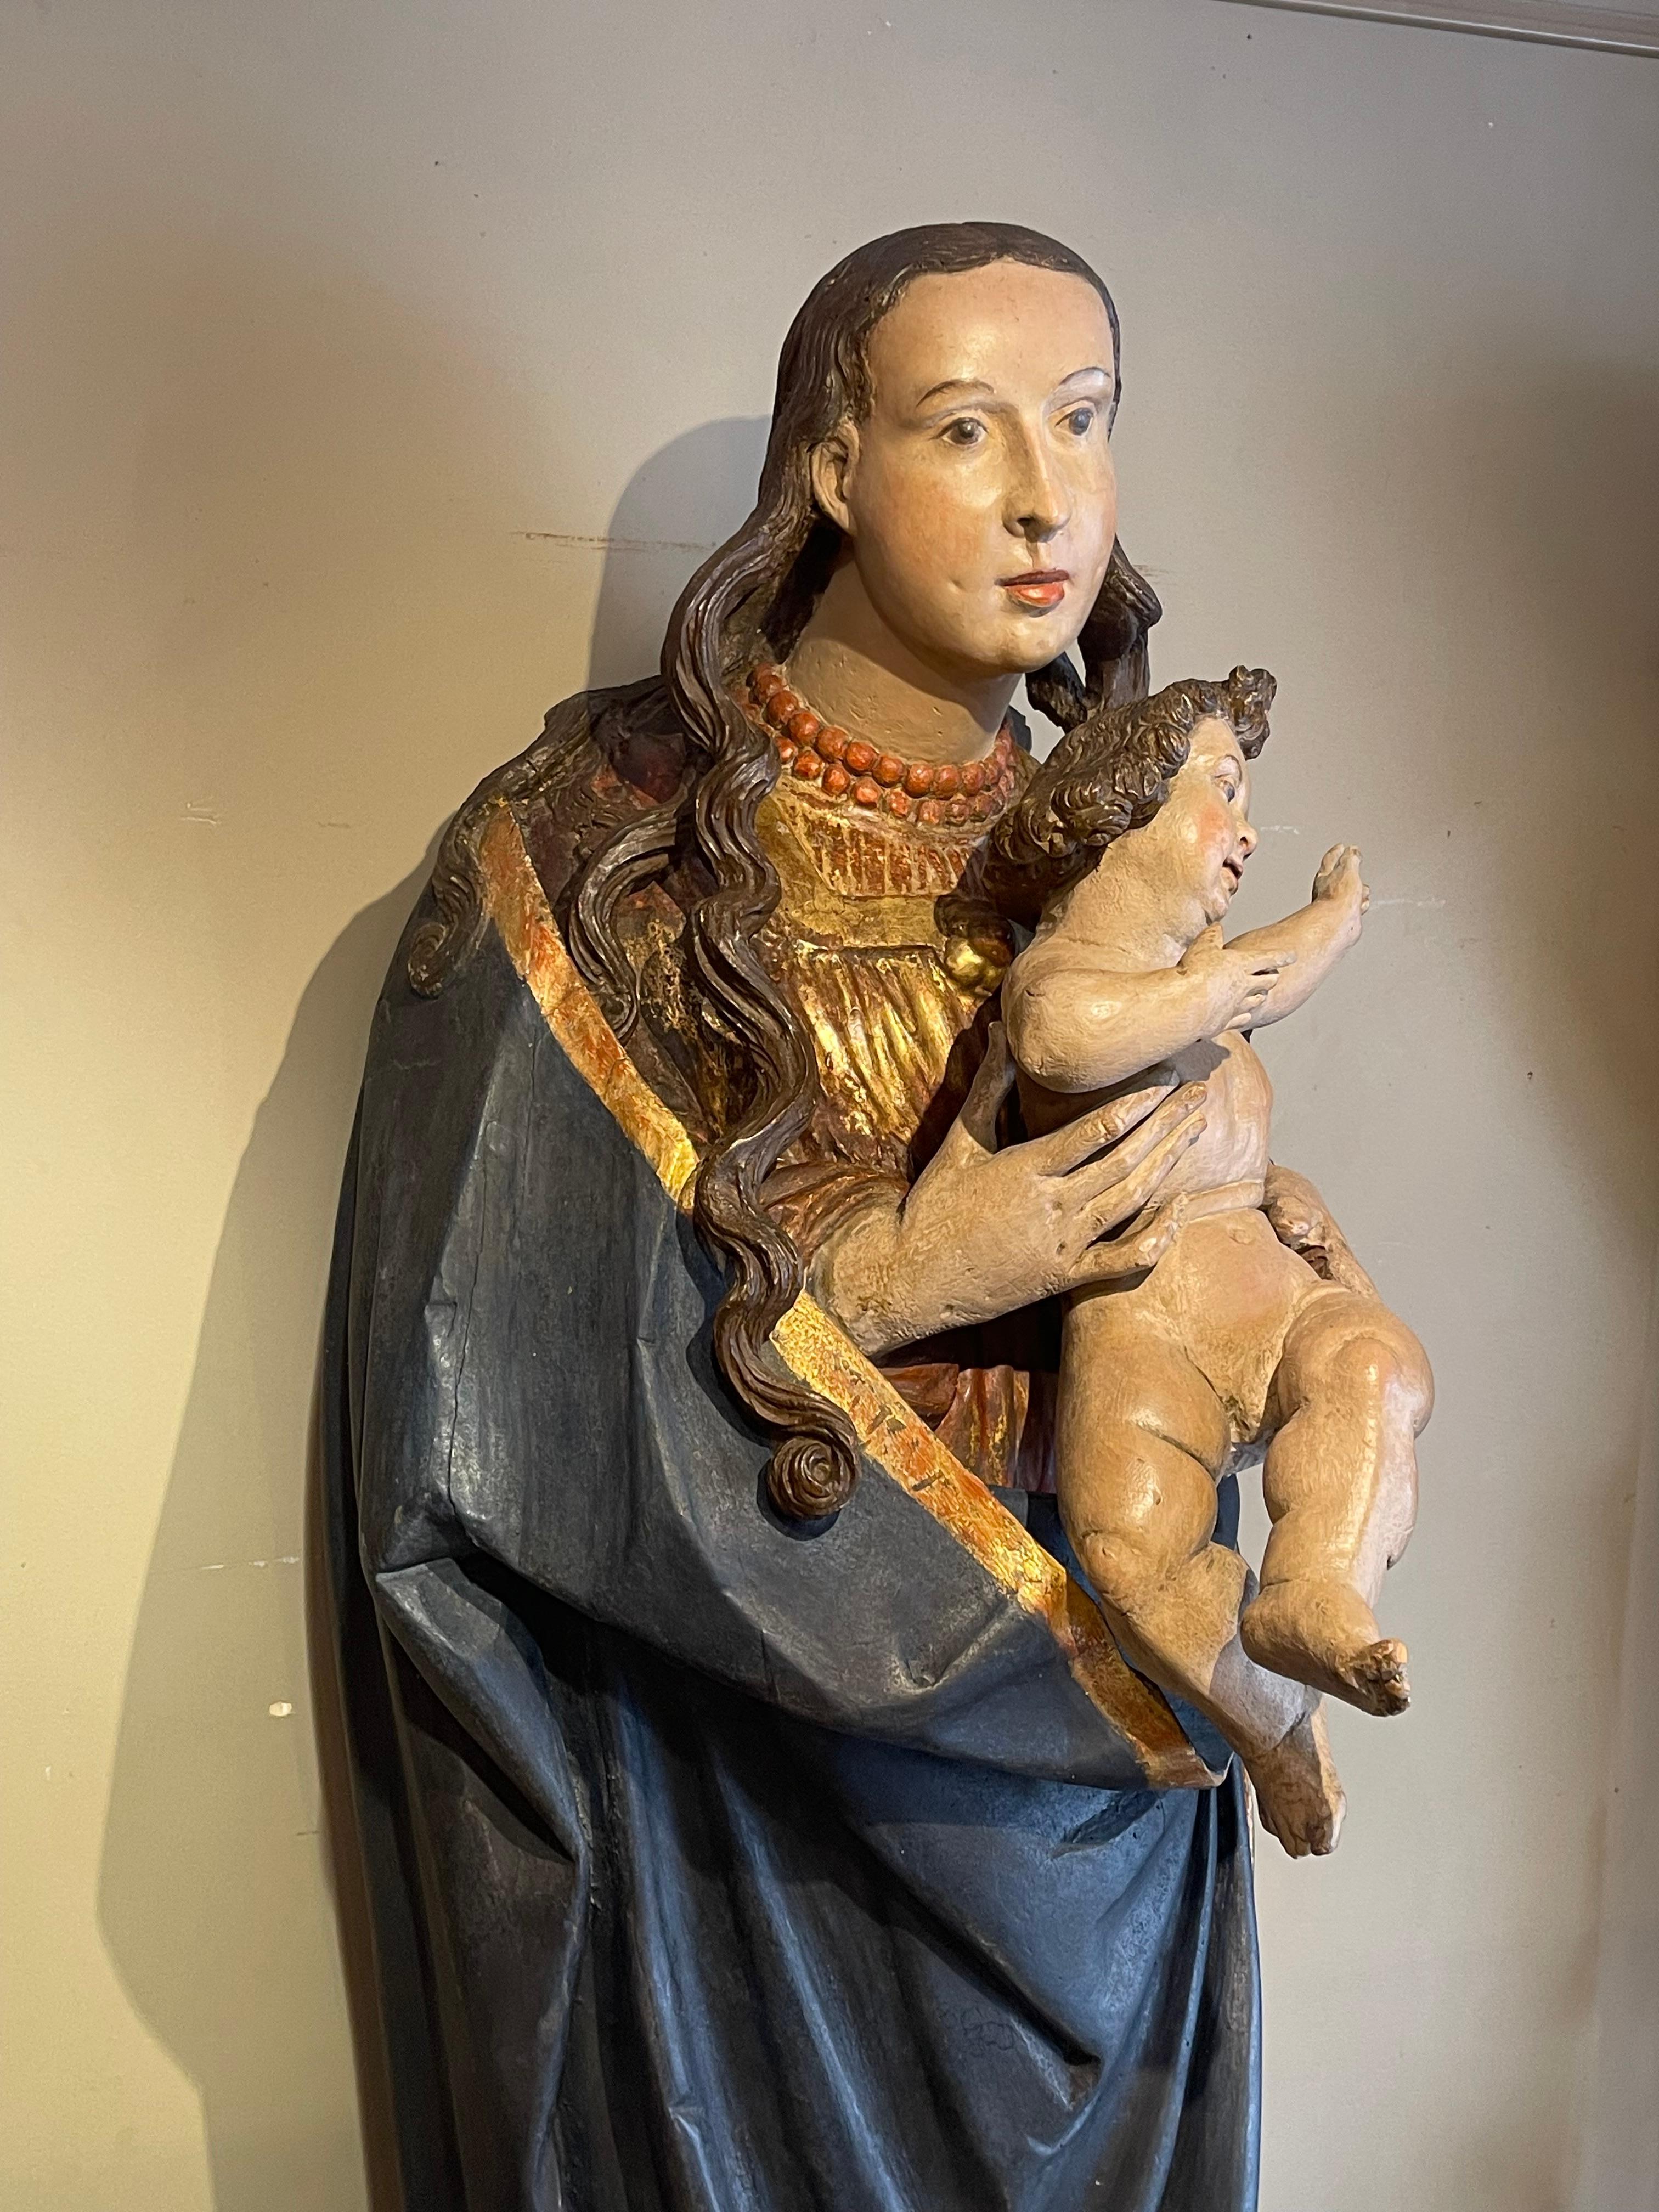 Große hölzerne Madonna mit Kind, bemalt und auf der Rückseite hohl geschnitzt.
Das Thema der Jungfrau mit dem Kind ist in der gesamten christlichen Kunst am häufigsten vertreten, während die Kindheit Jesu von den kanonischen Evangelisten fast